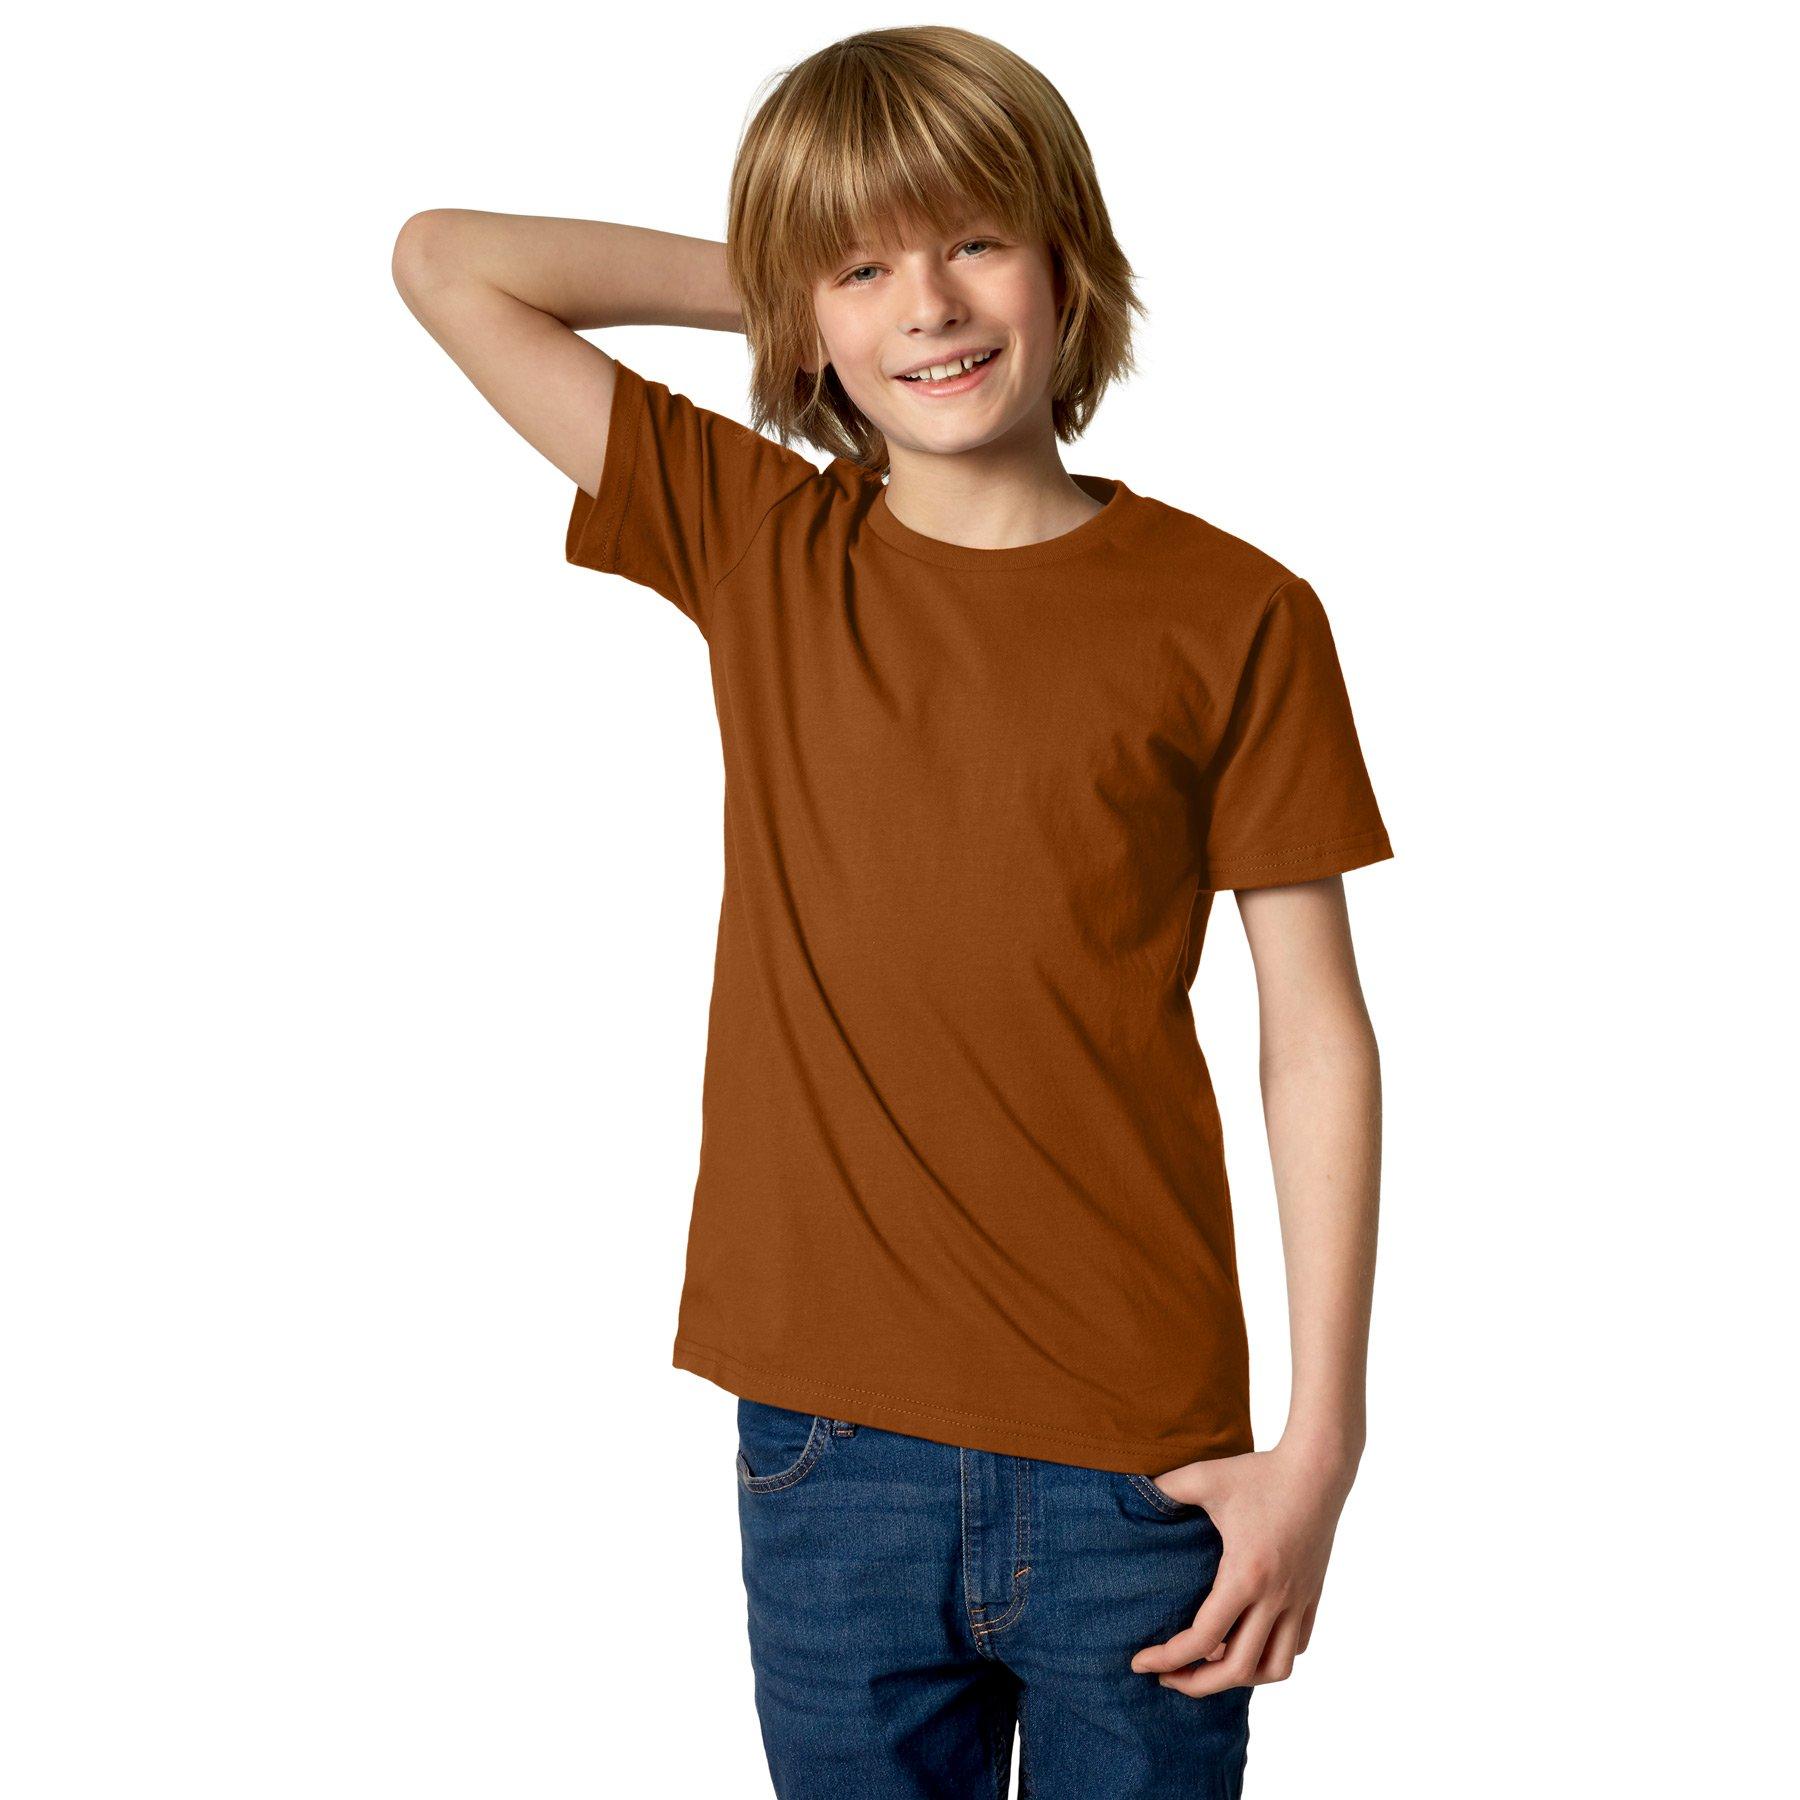 T-shirt Kinder Jungen Braun 116 von Tectake